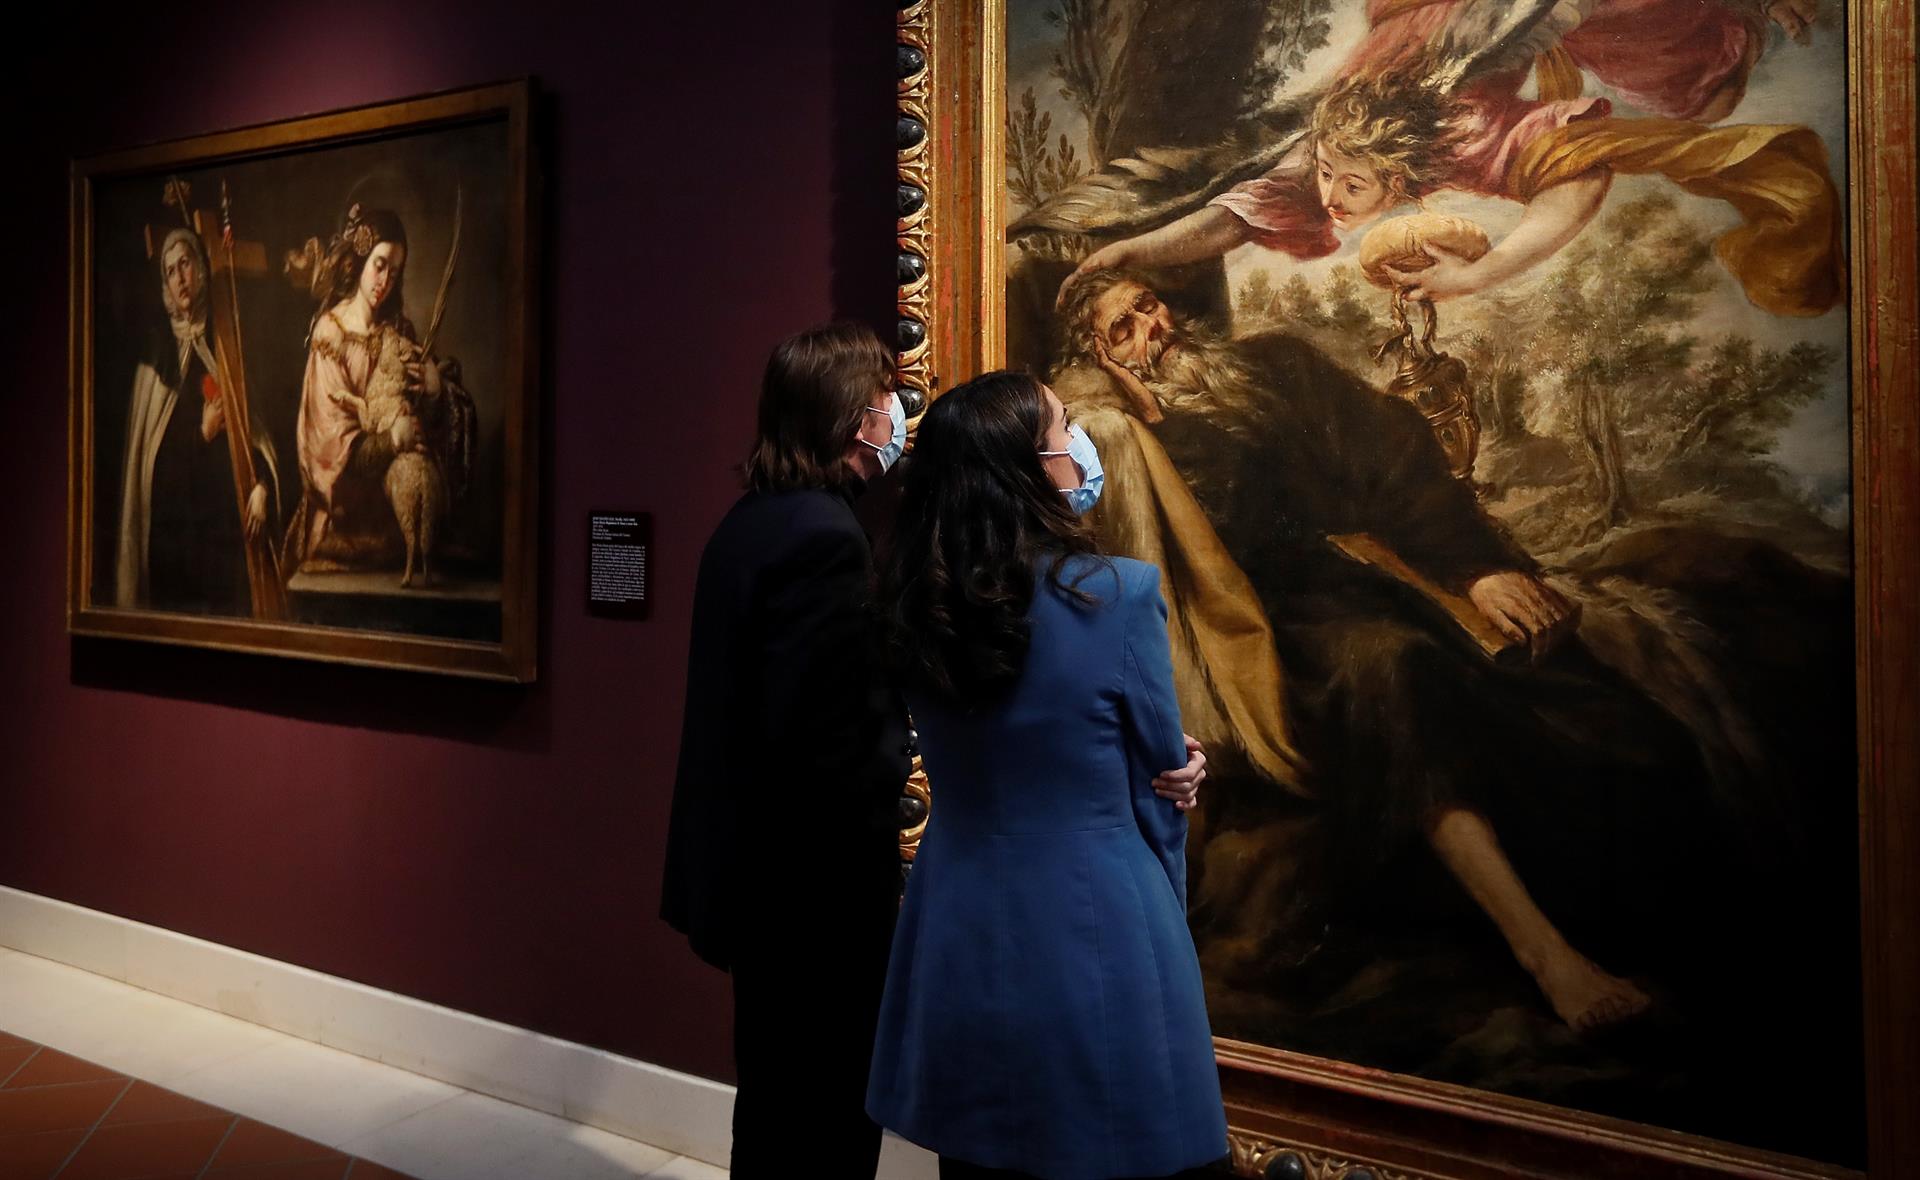 Varias personas observan uno de los cuadros que forman parte de la exposición ""Valdés Leal (1622-1690)". EFE/Archivo